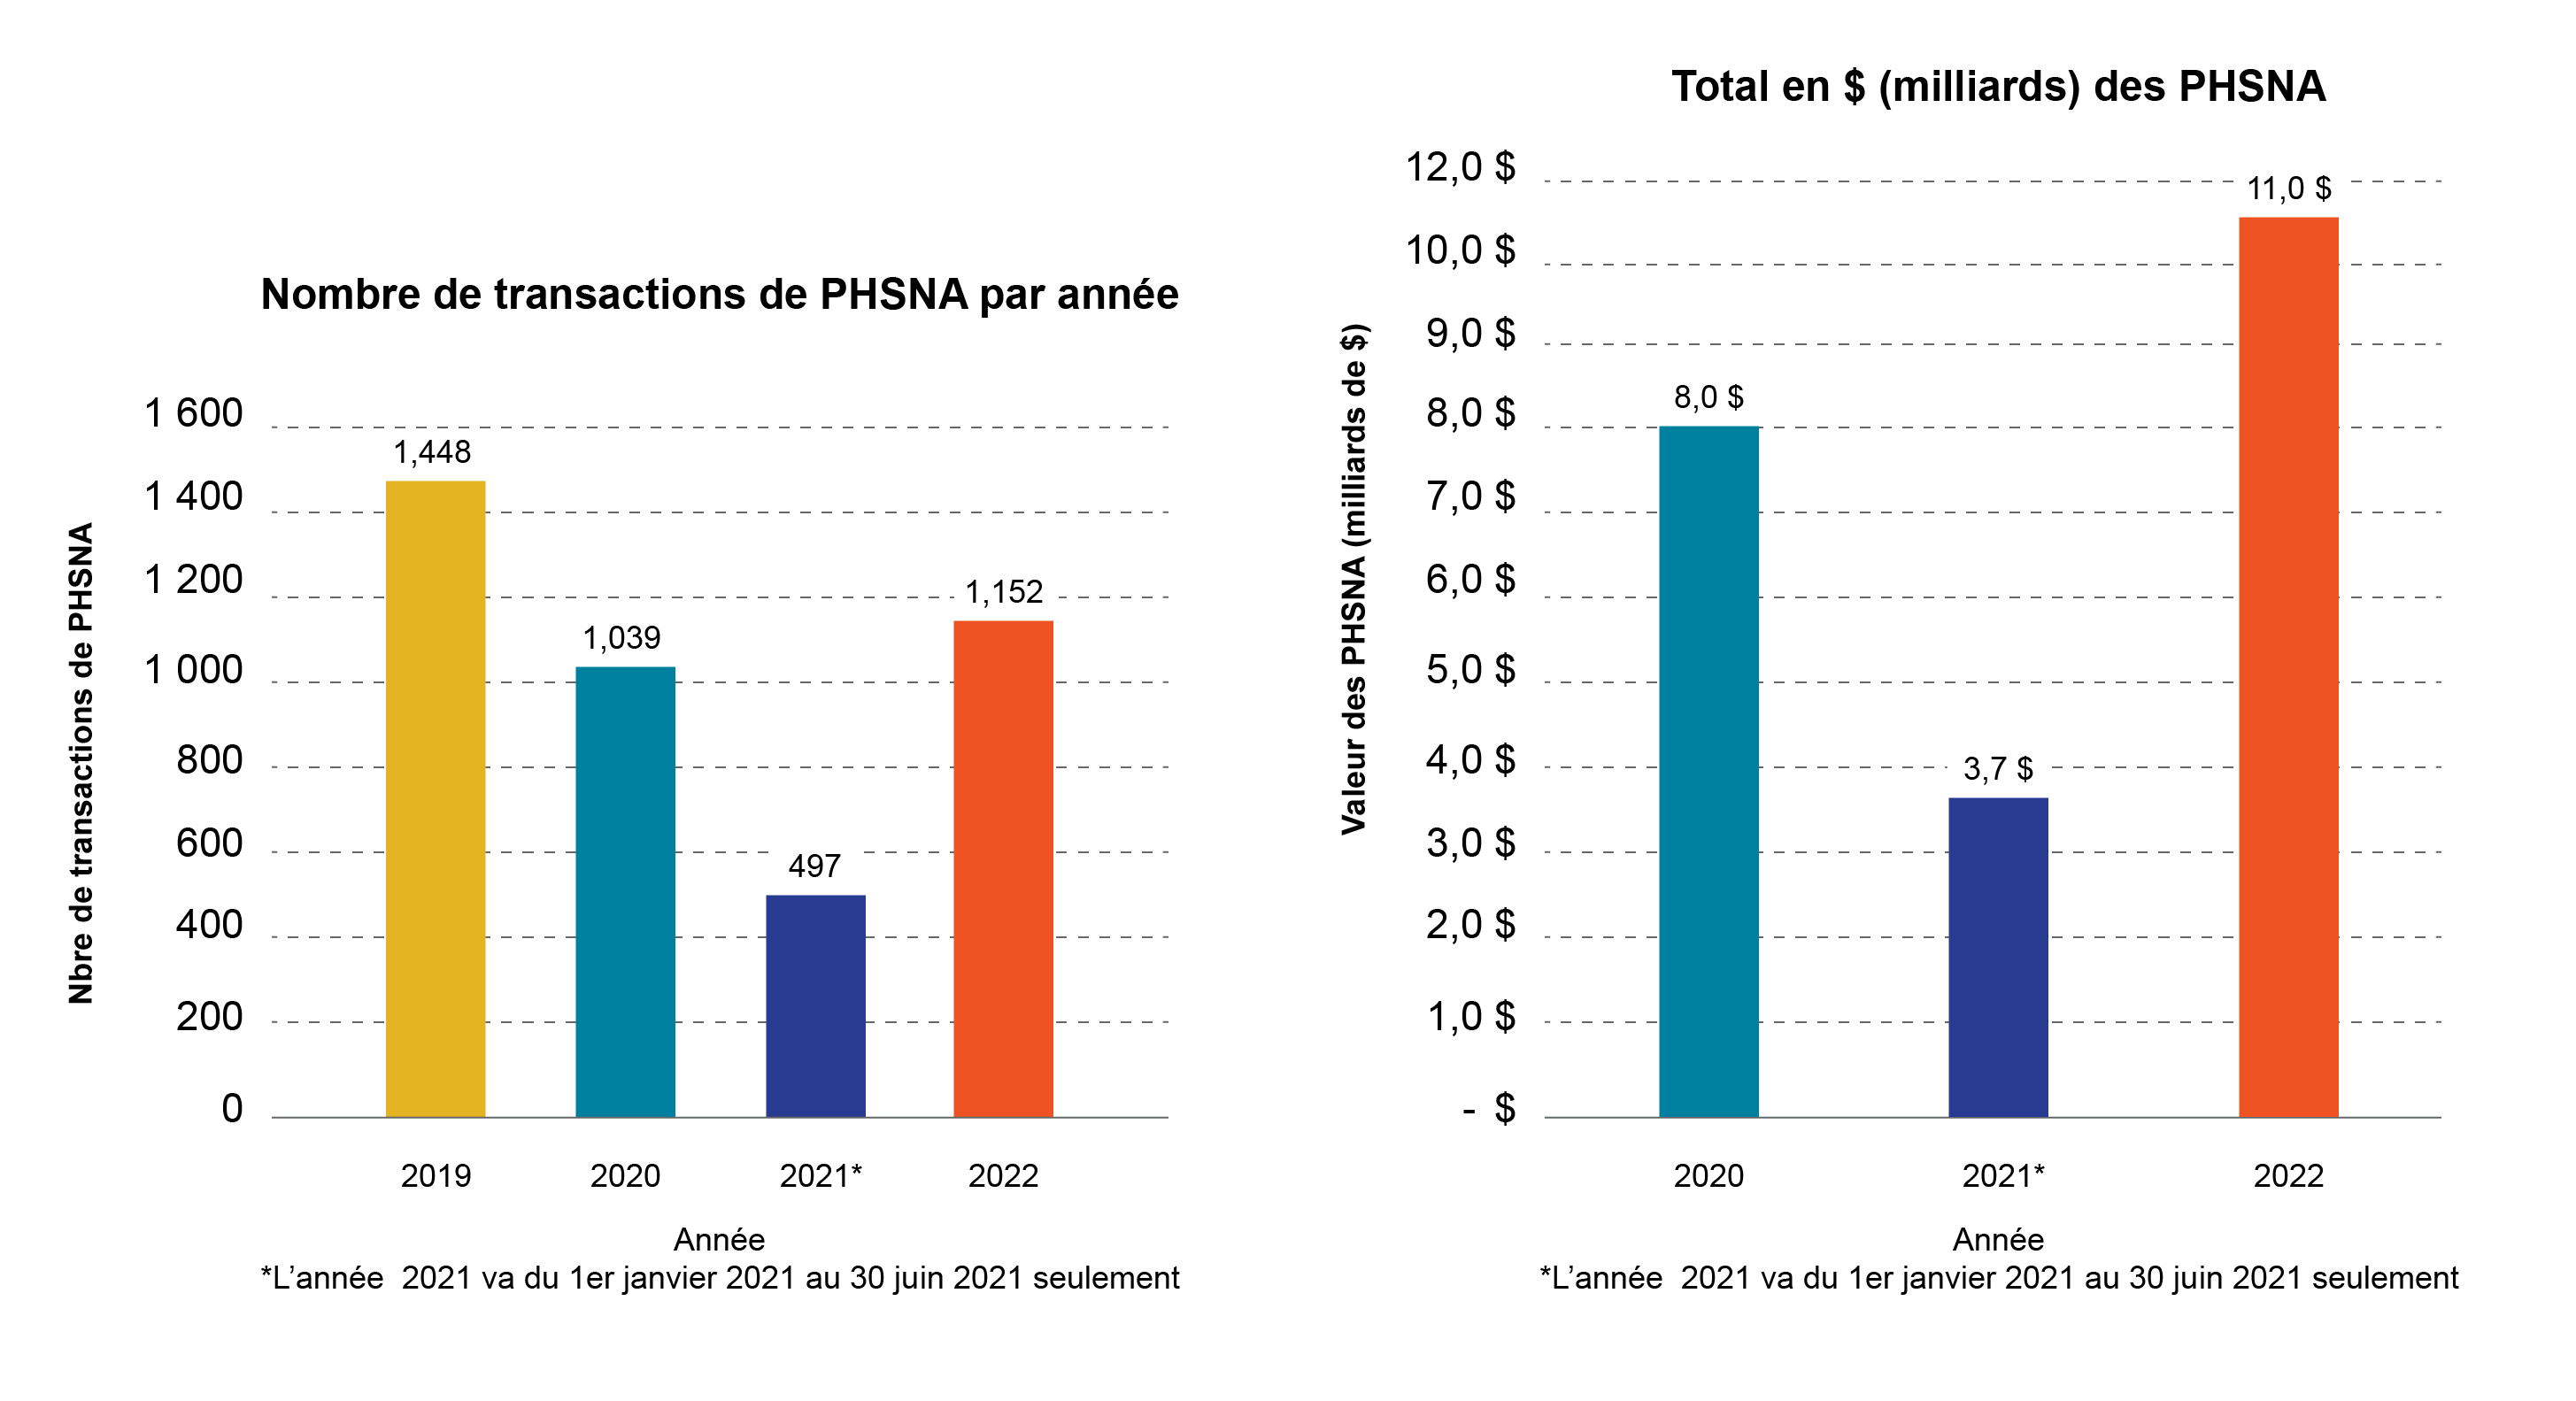 Nombre de transactions de PHSNA par année, Total en $ (milliards) des PHSNA